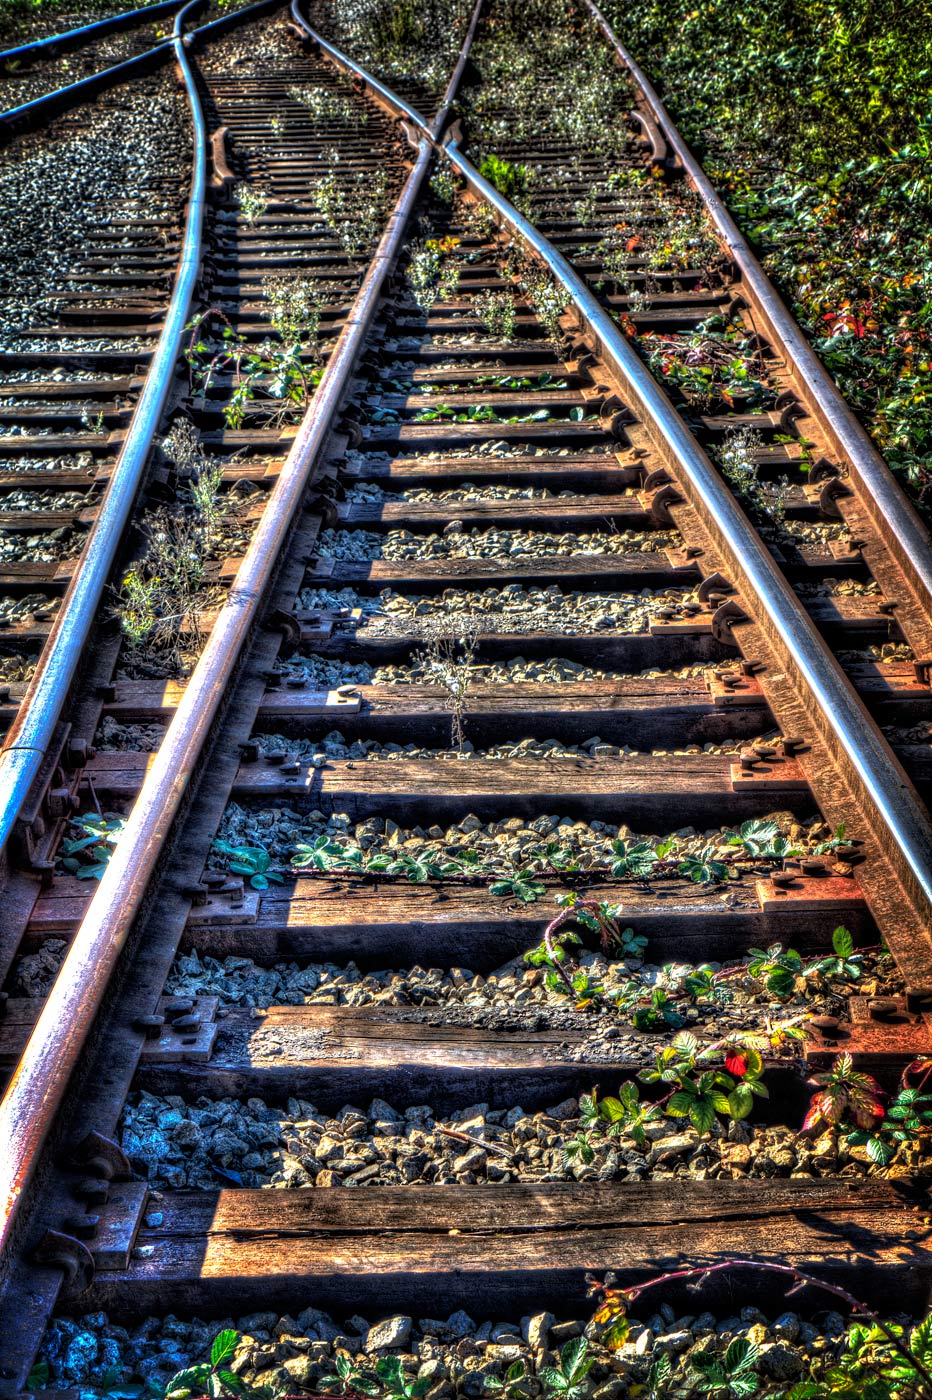 Railway Tracks and Cross Ties